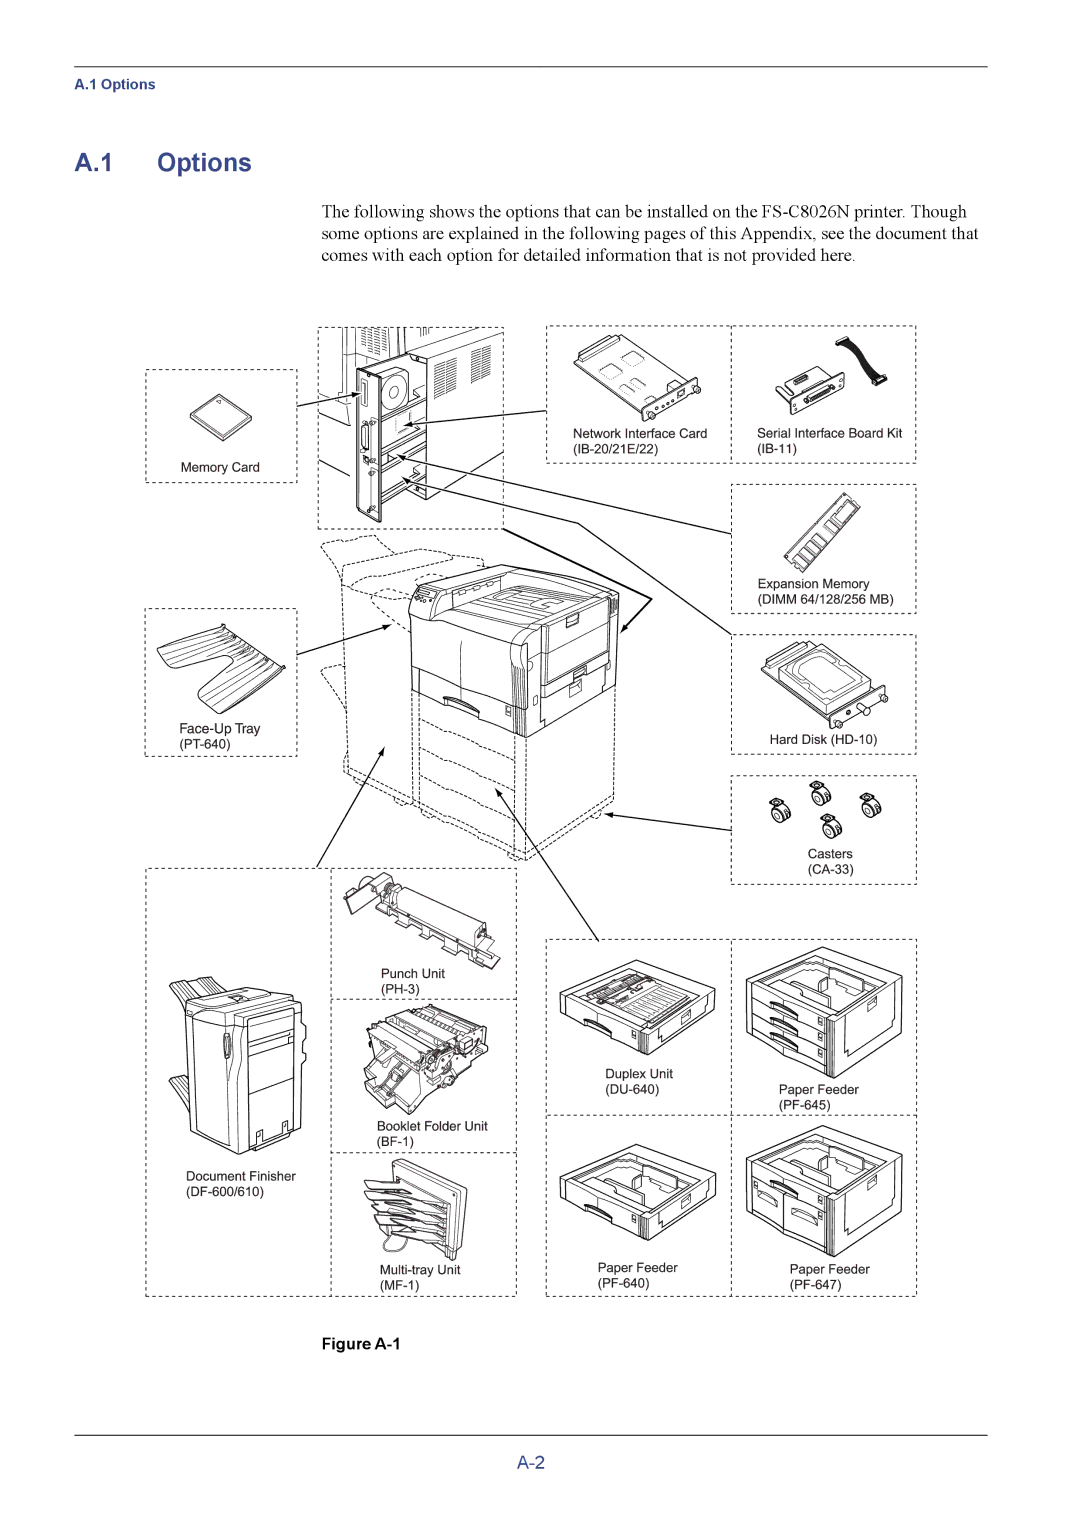 Kyocera FS-C8026N manual Options, Figure A-1 